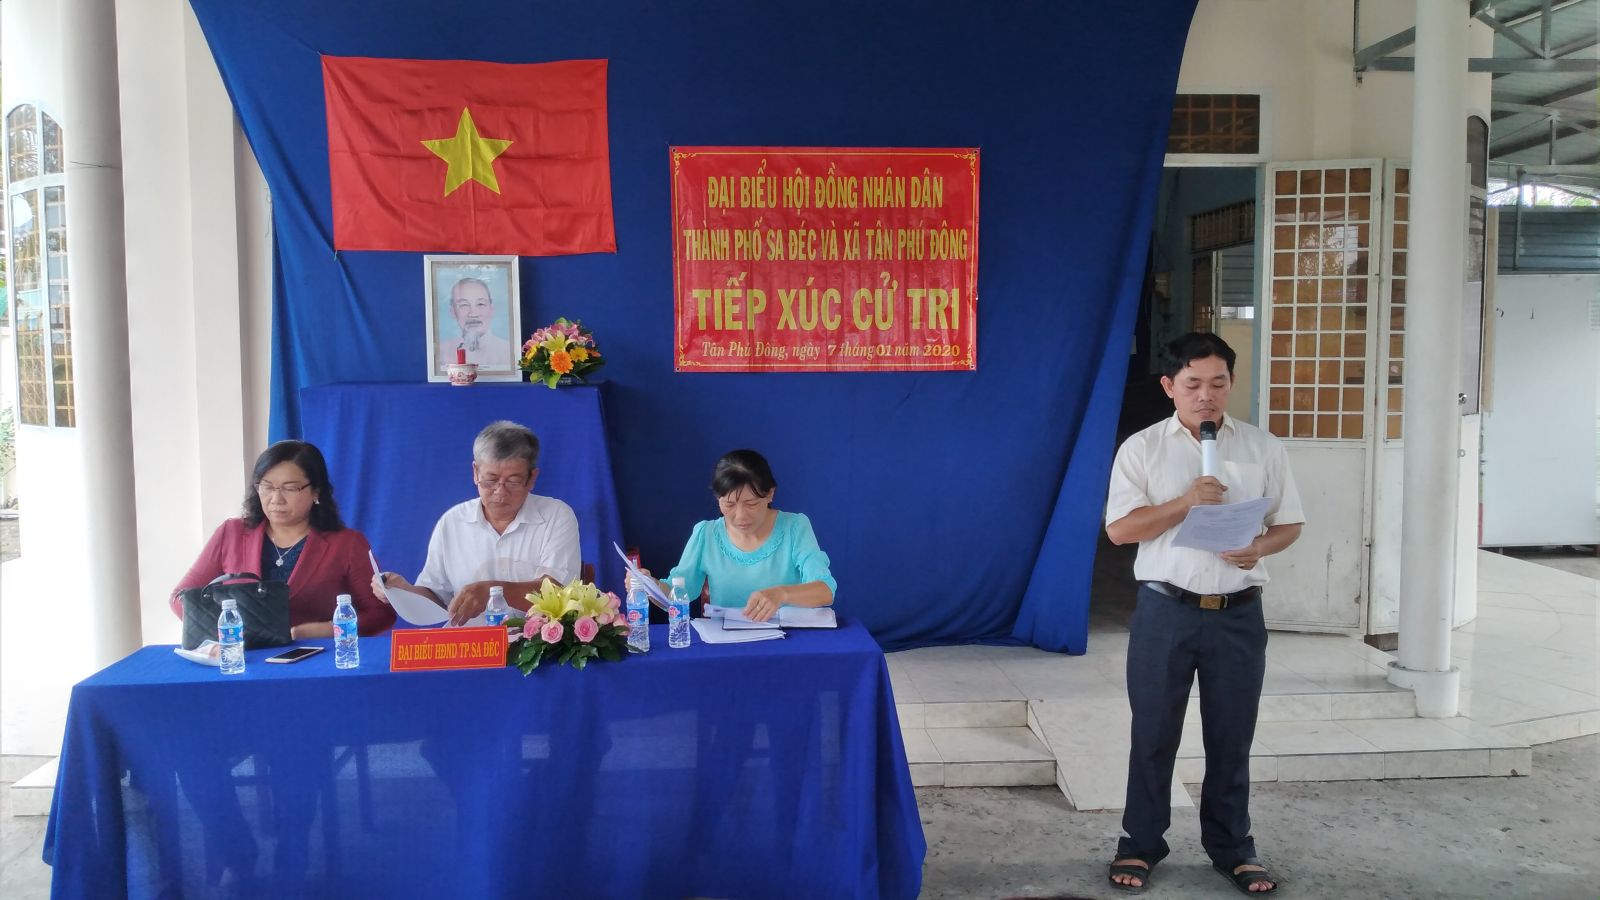 Tổ Đại biểu HĐND Thành phố Sa Đéc đơn vị xã Tân Phú Đông